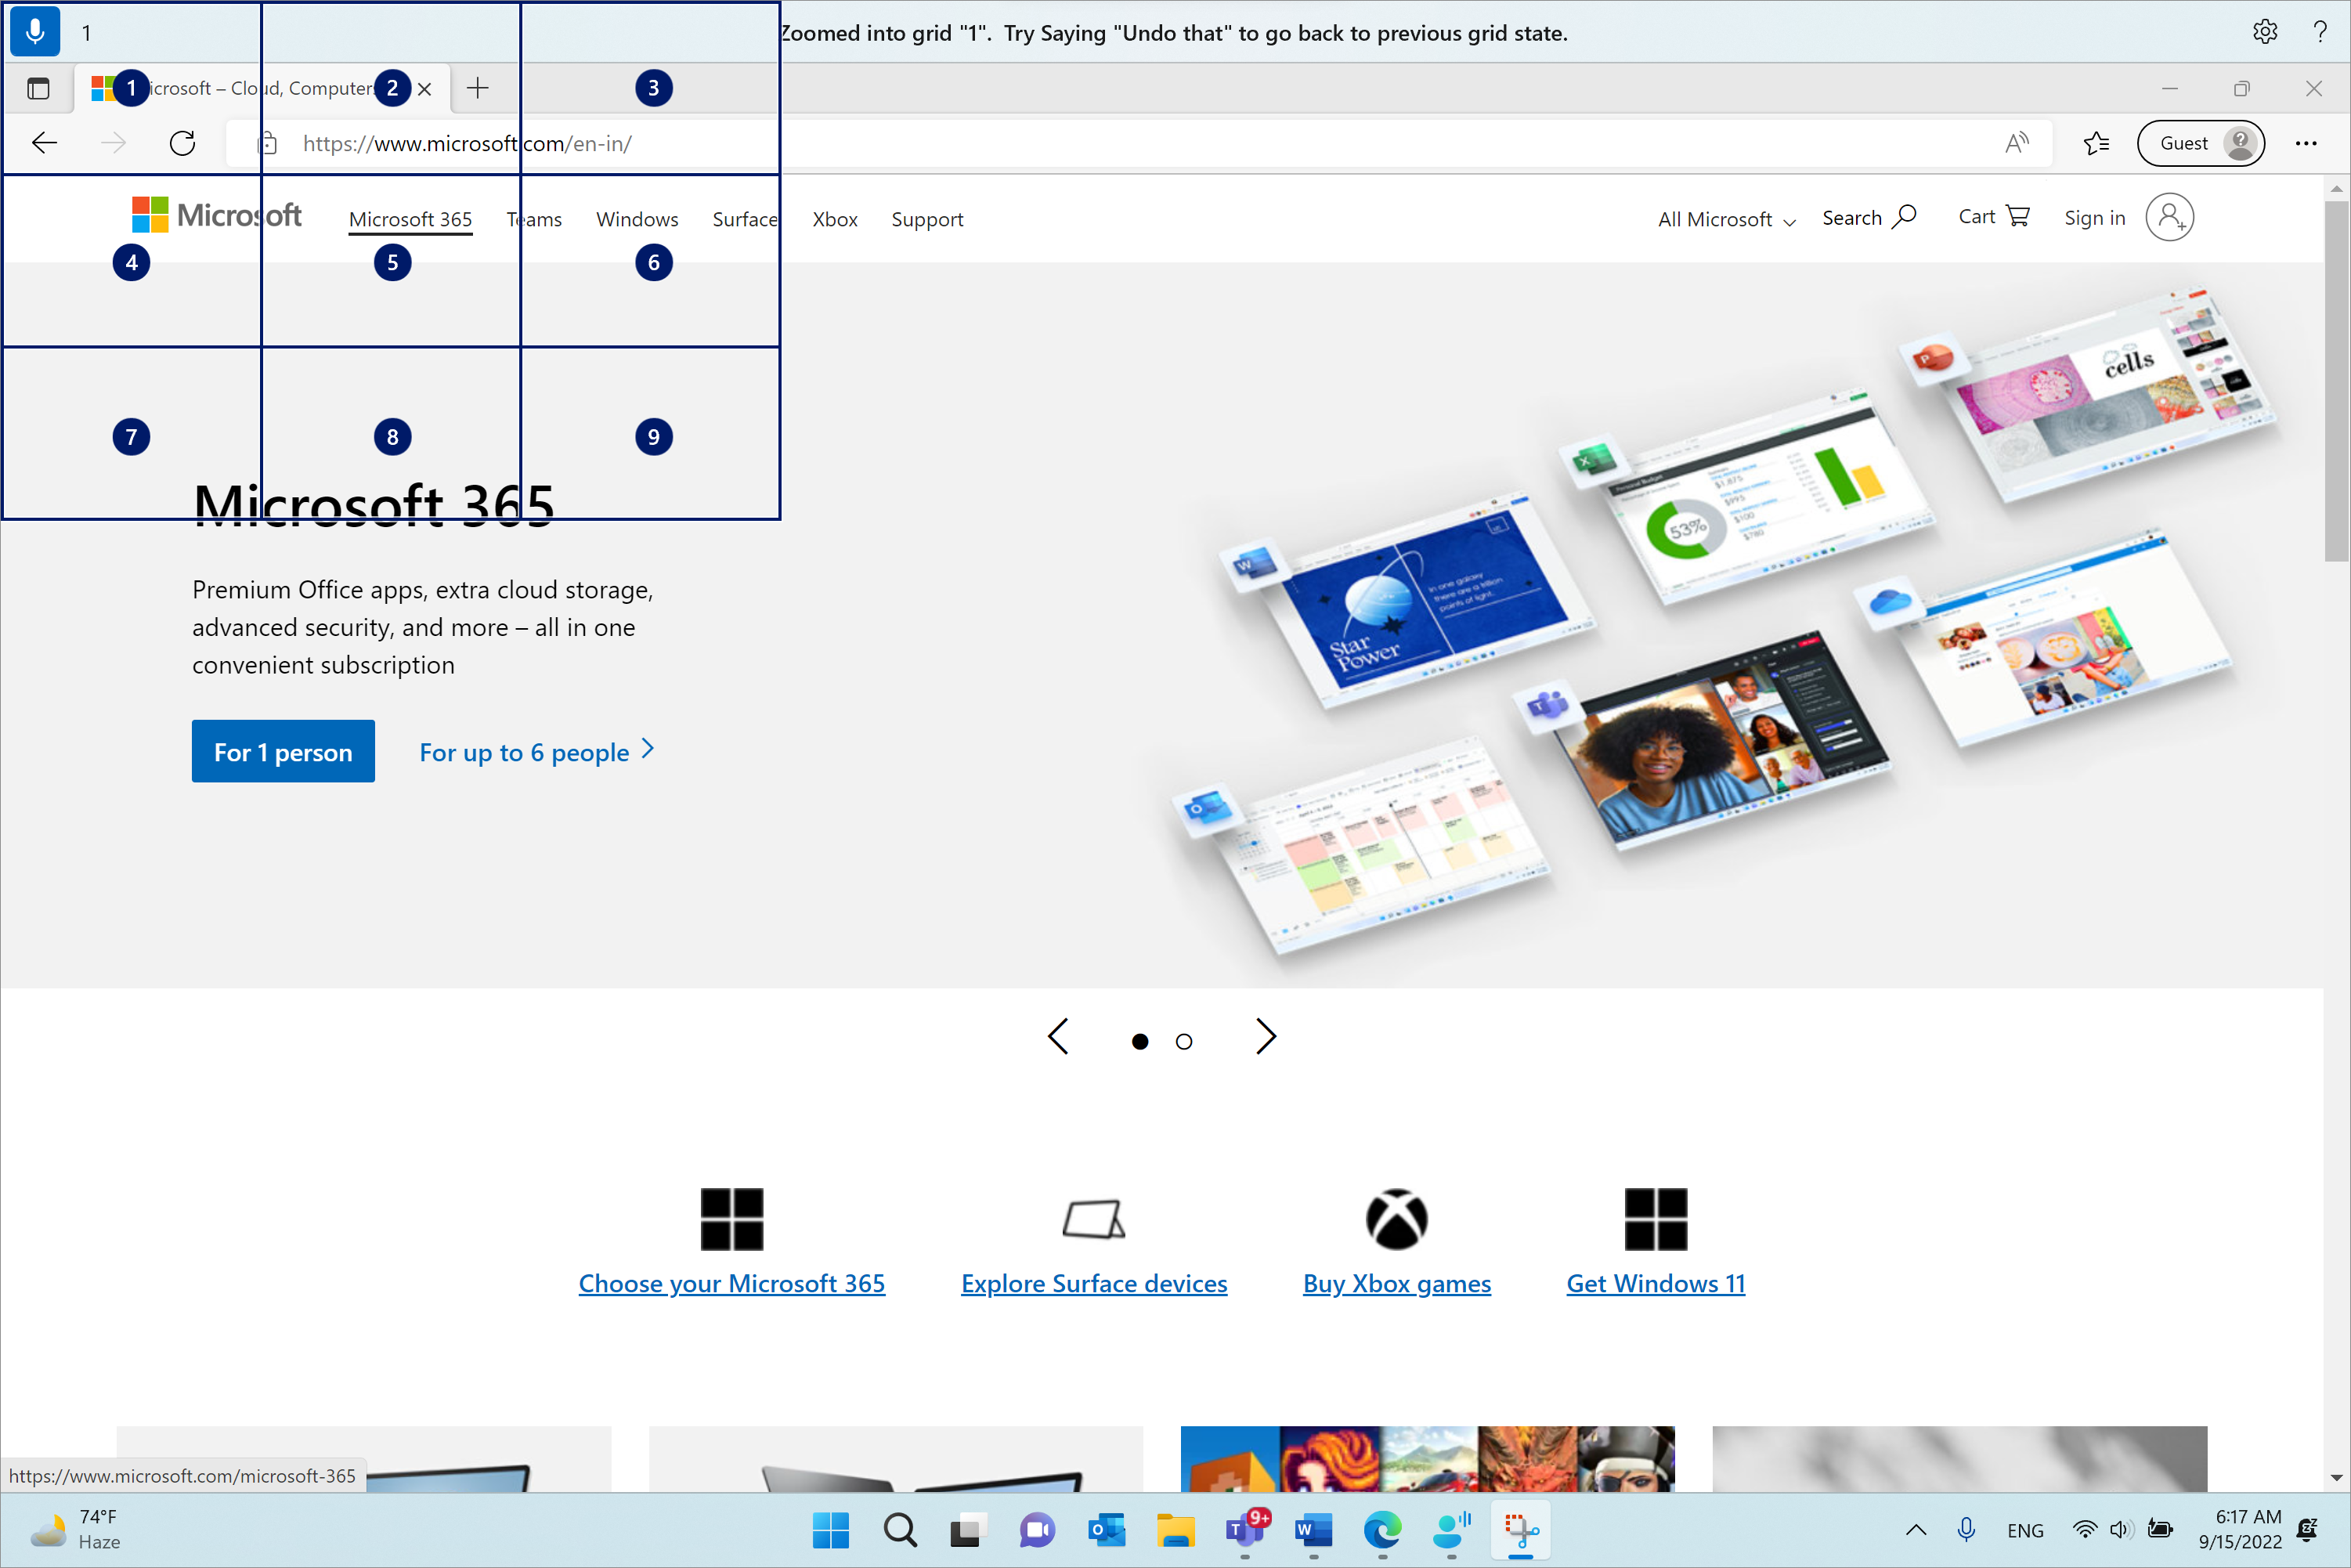 O Microsoft Edge está aberto e na página Microsoft.com. A barra de acesso por voz está no topo e no estado de escuta. O comando emitido é "1" e o feedback apresentado é "Ampliado na grelha "1". Experimente dizer "anular" para voltar ao estado da grelha anterior."